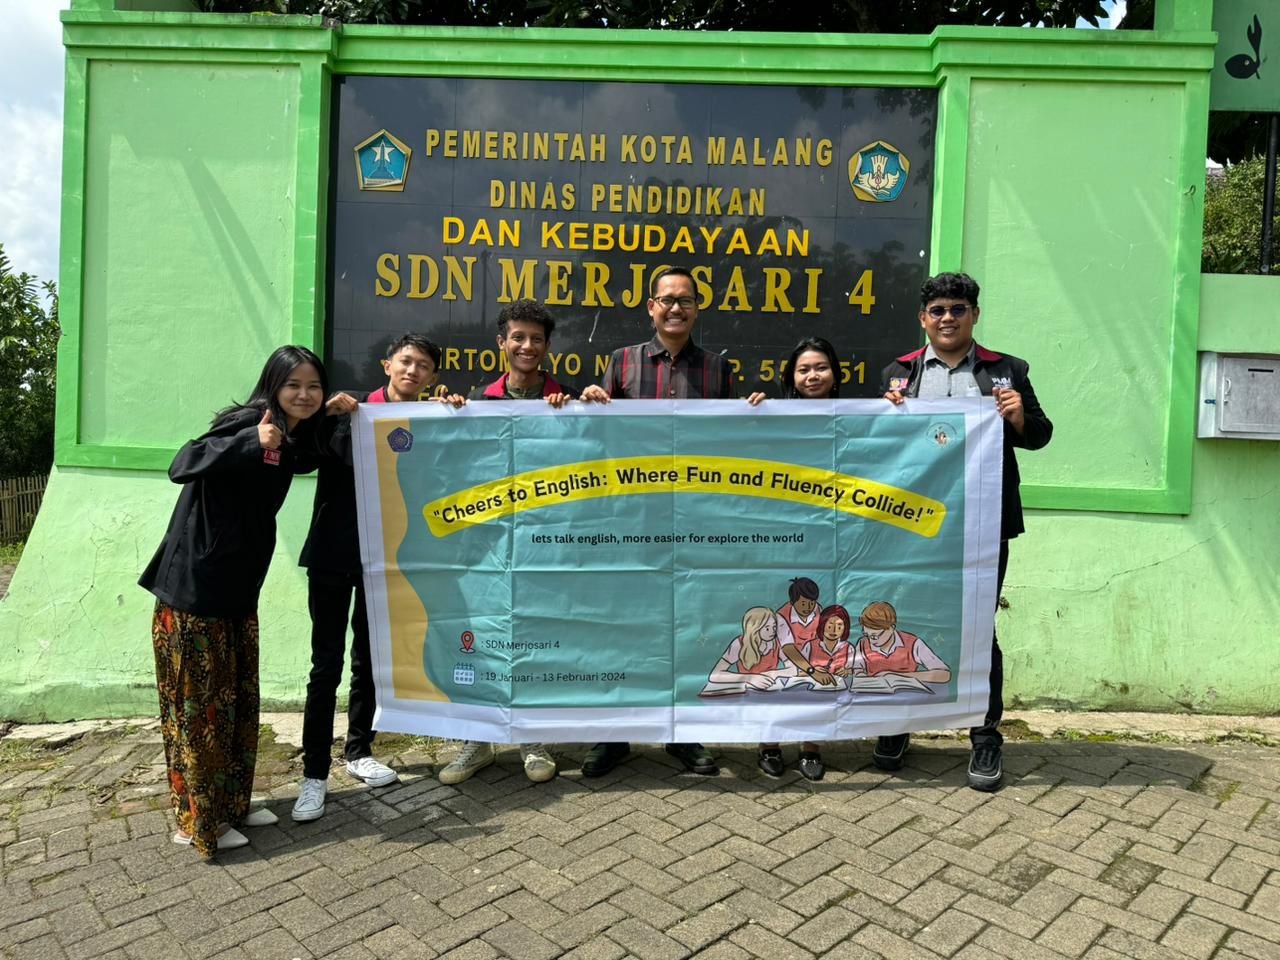 Membangun Minat Belajar Bahasa Inggris Murid SDN Merjosari 4 Kota Malang Melalui Pengabdian Mahasiswa Universitas Muhammadiyah Malang Kepada Masyarakat.